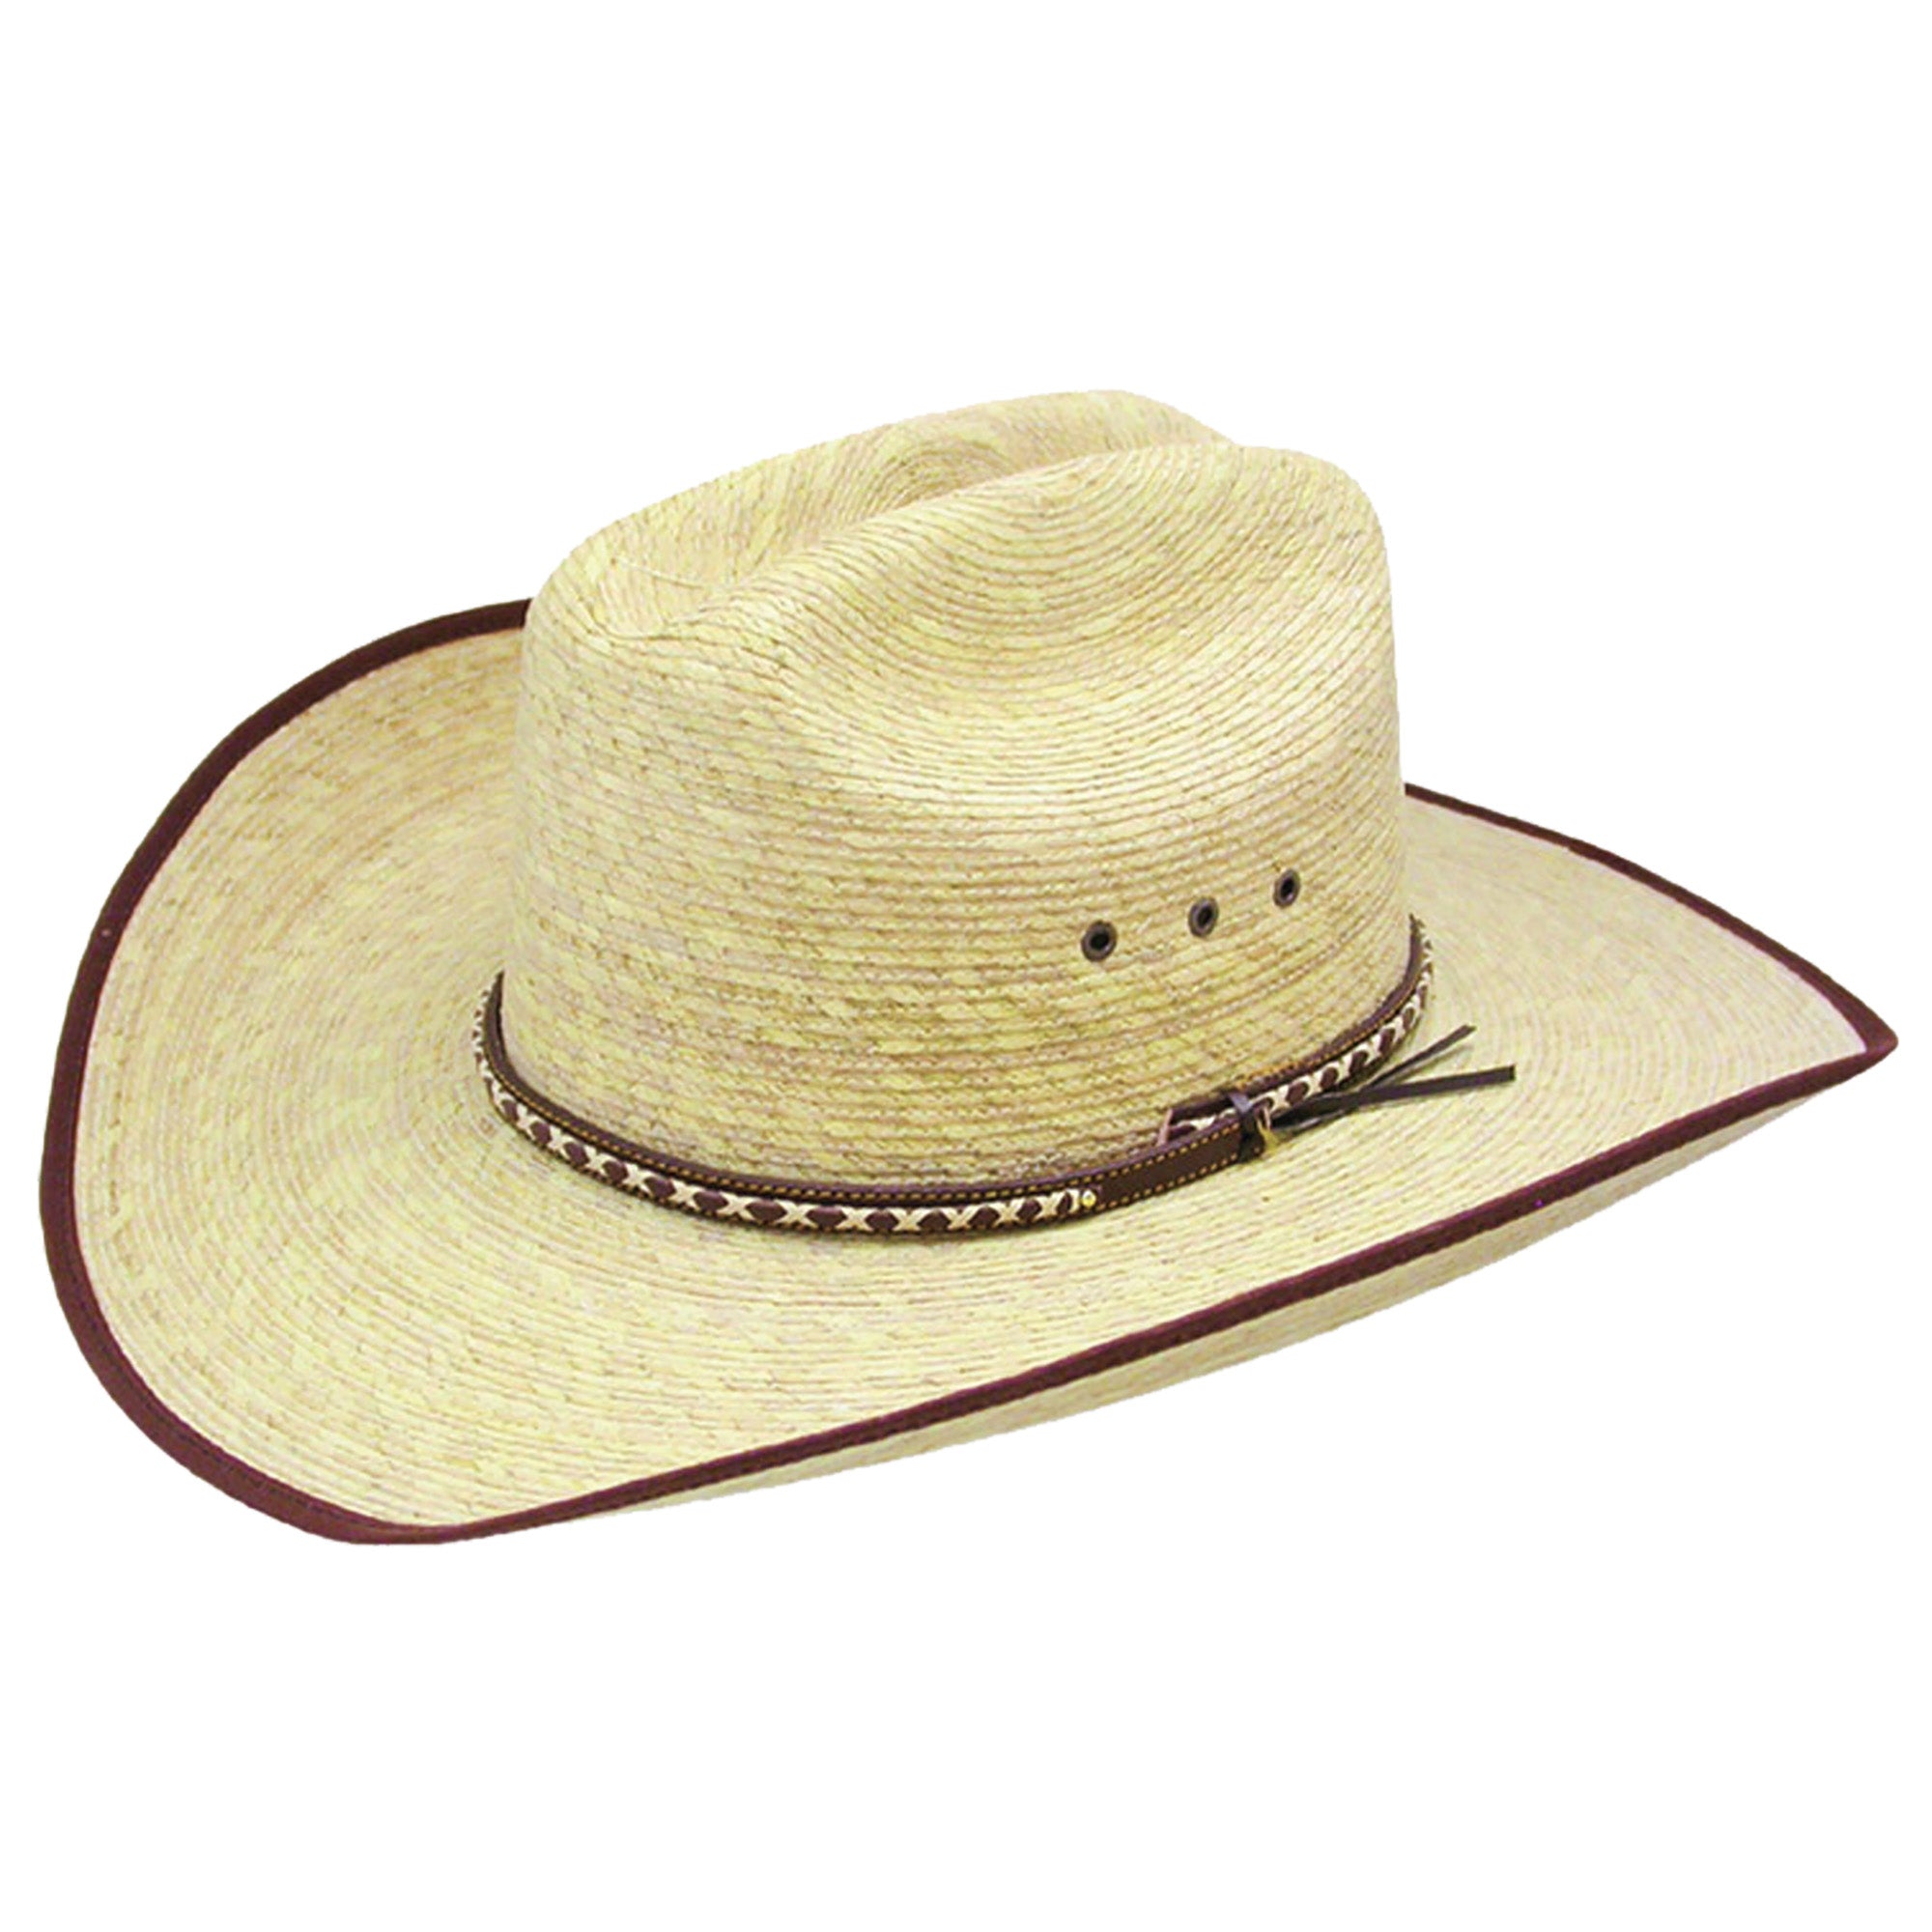 Brush Hog Jr.- straw cowboy hat